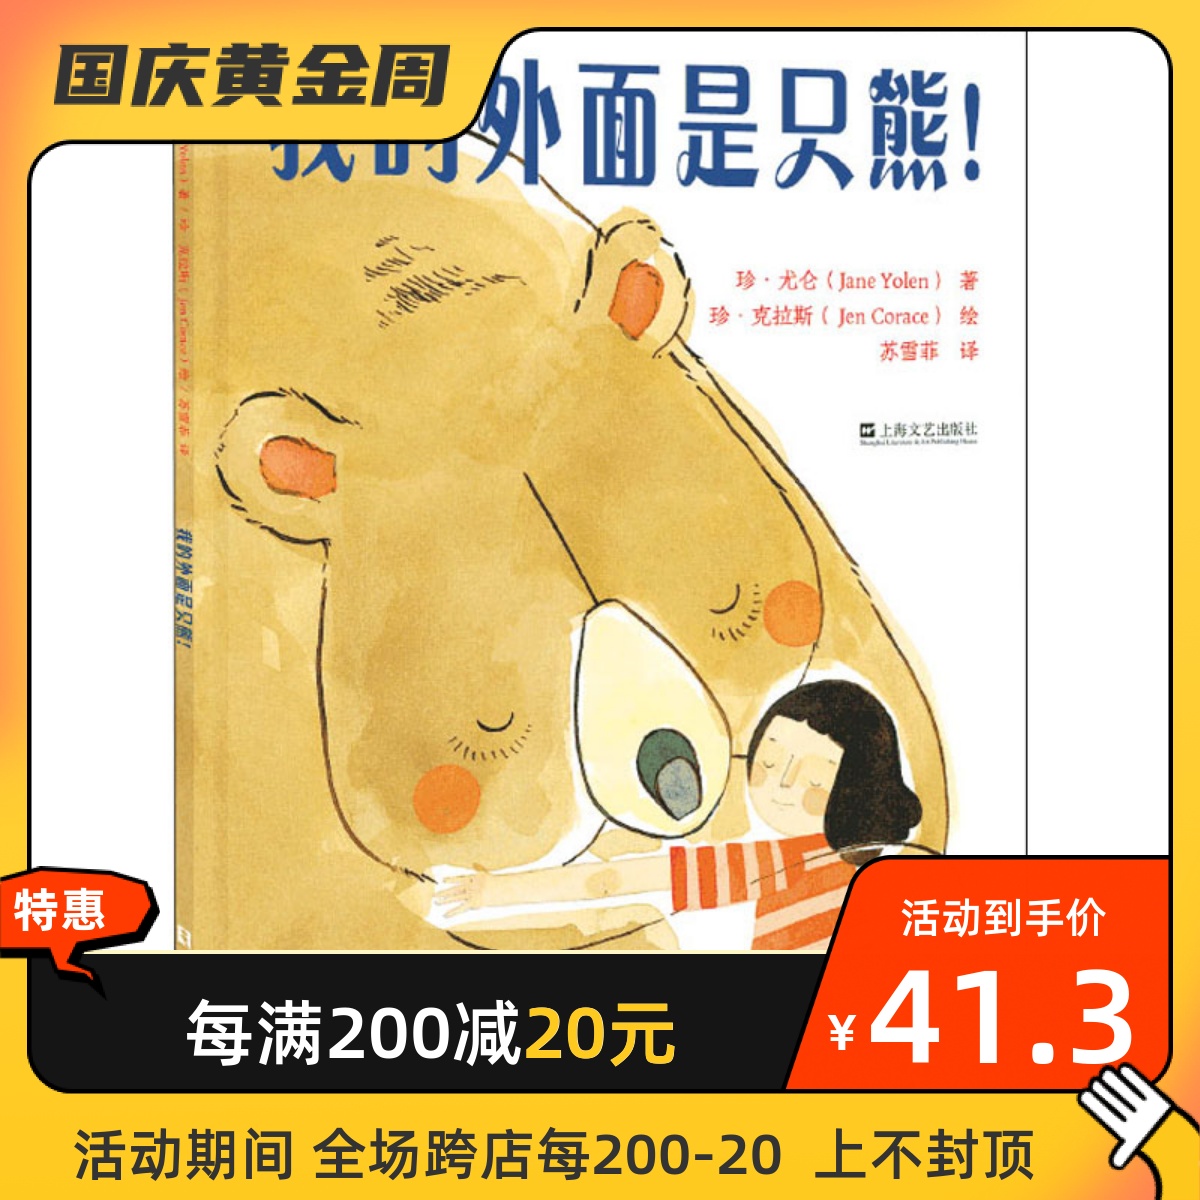 我的外面是只熊! 上海文艺出版社 (美)珍·尤仑 著 苏雪菲 译 (美)珍·克拉斯 绘